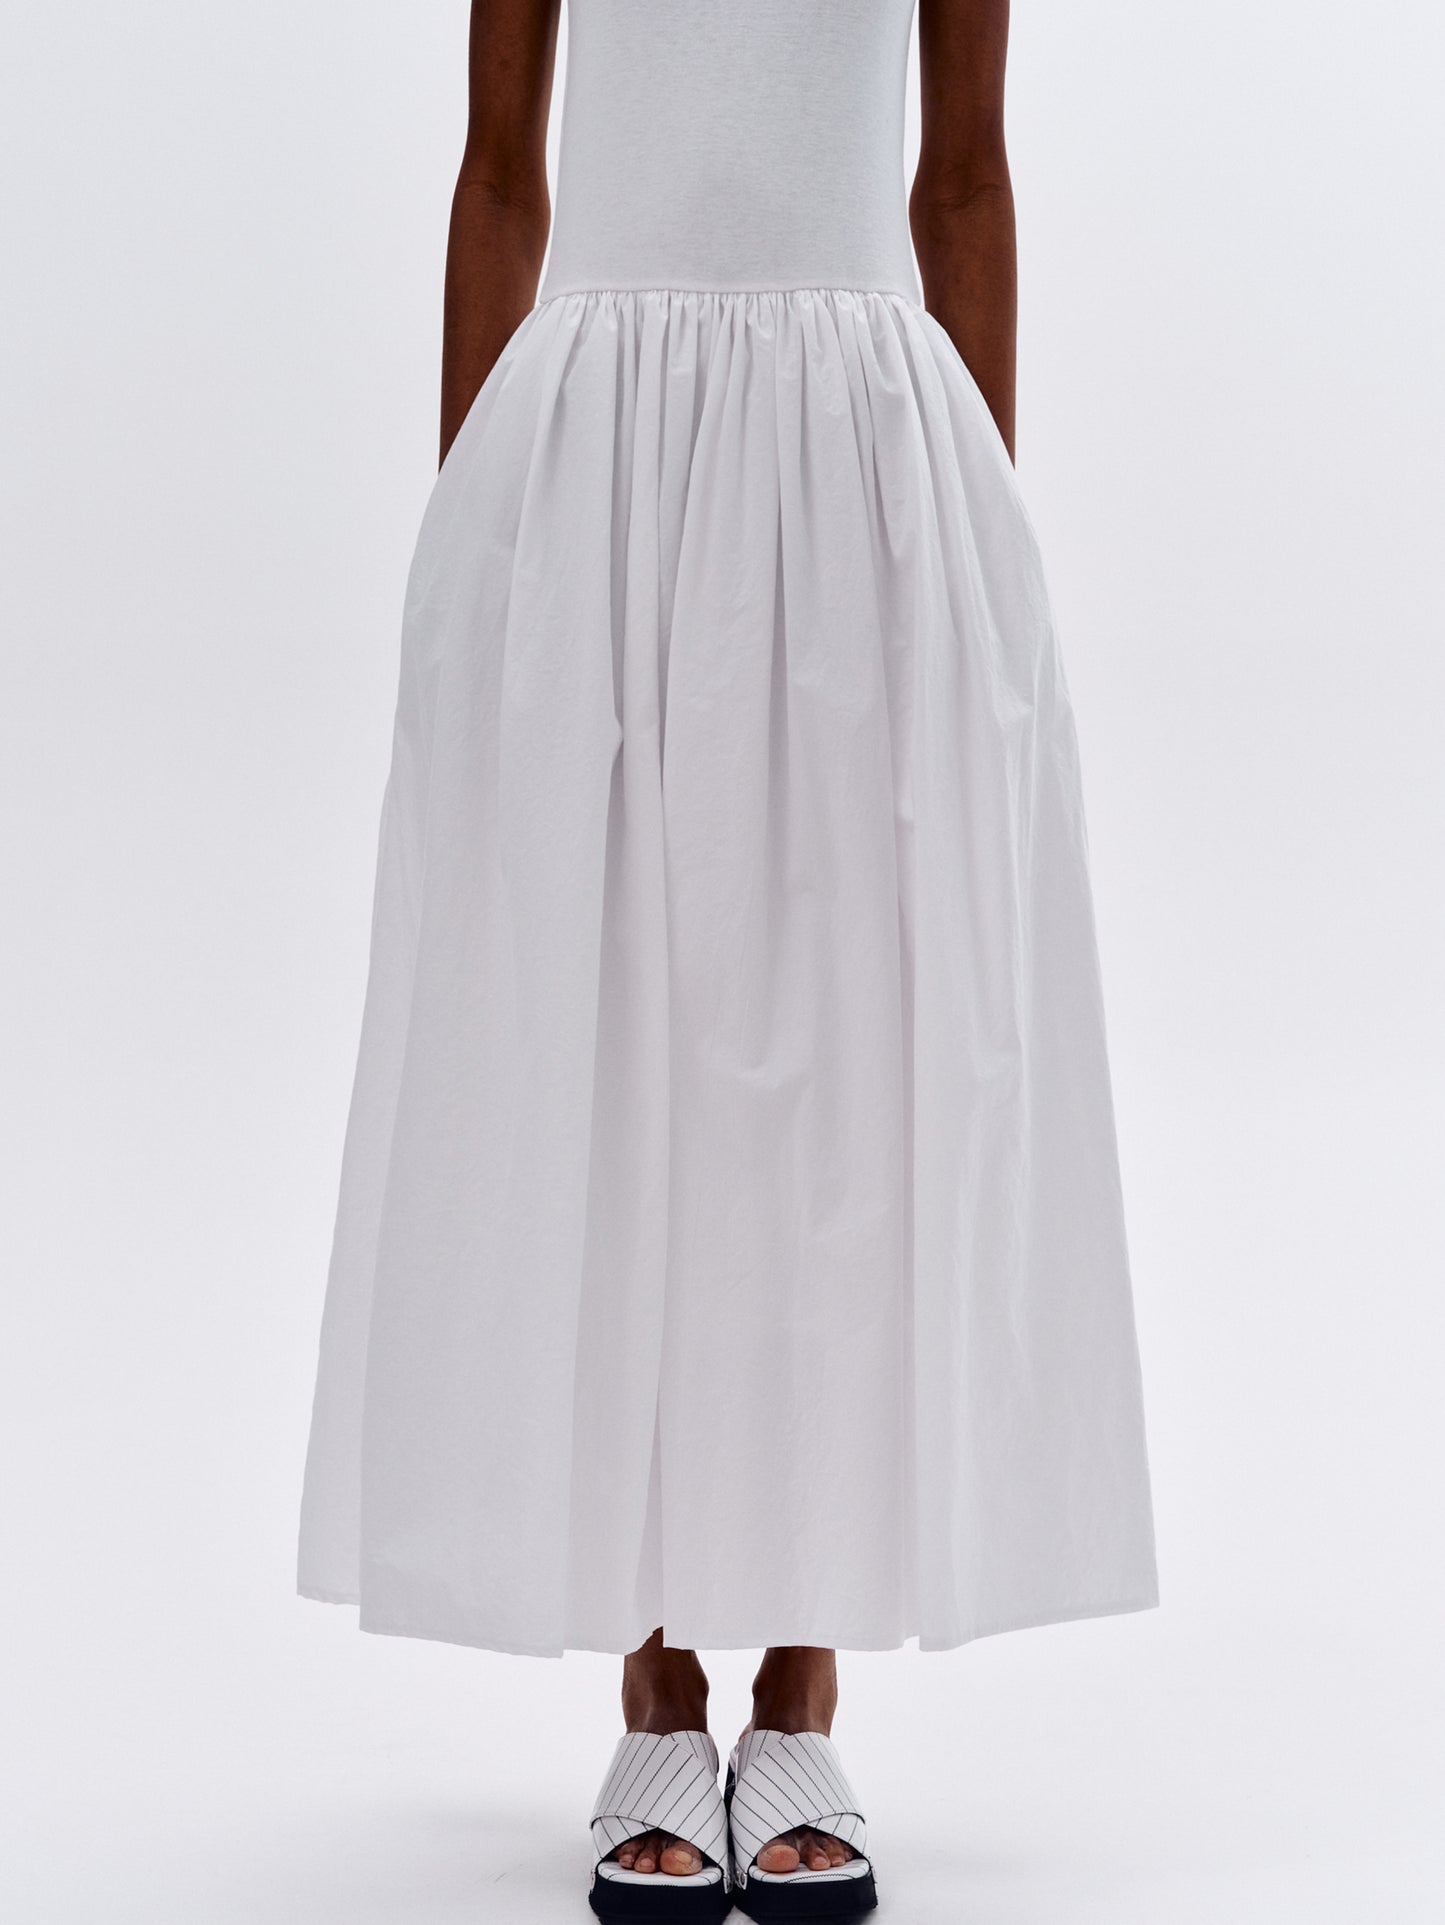 Cotton Tank Dress, White